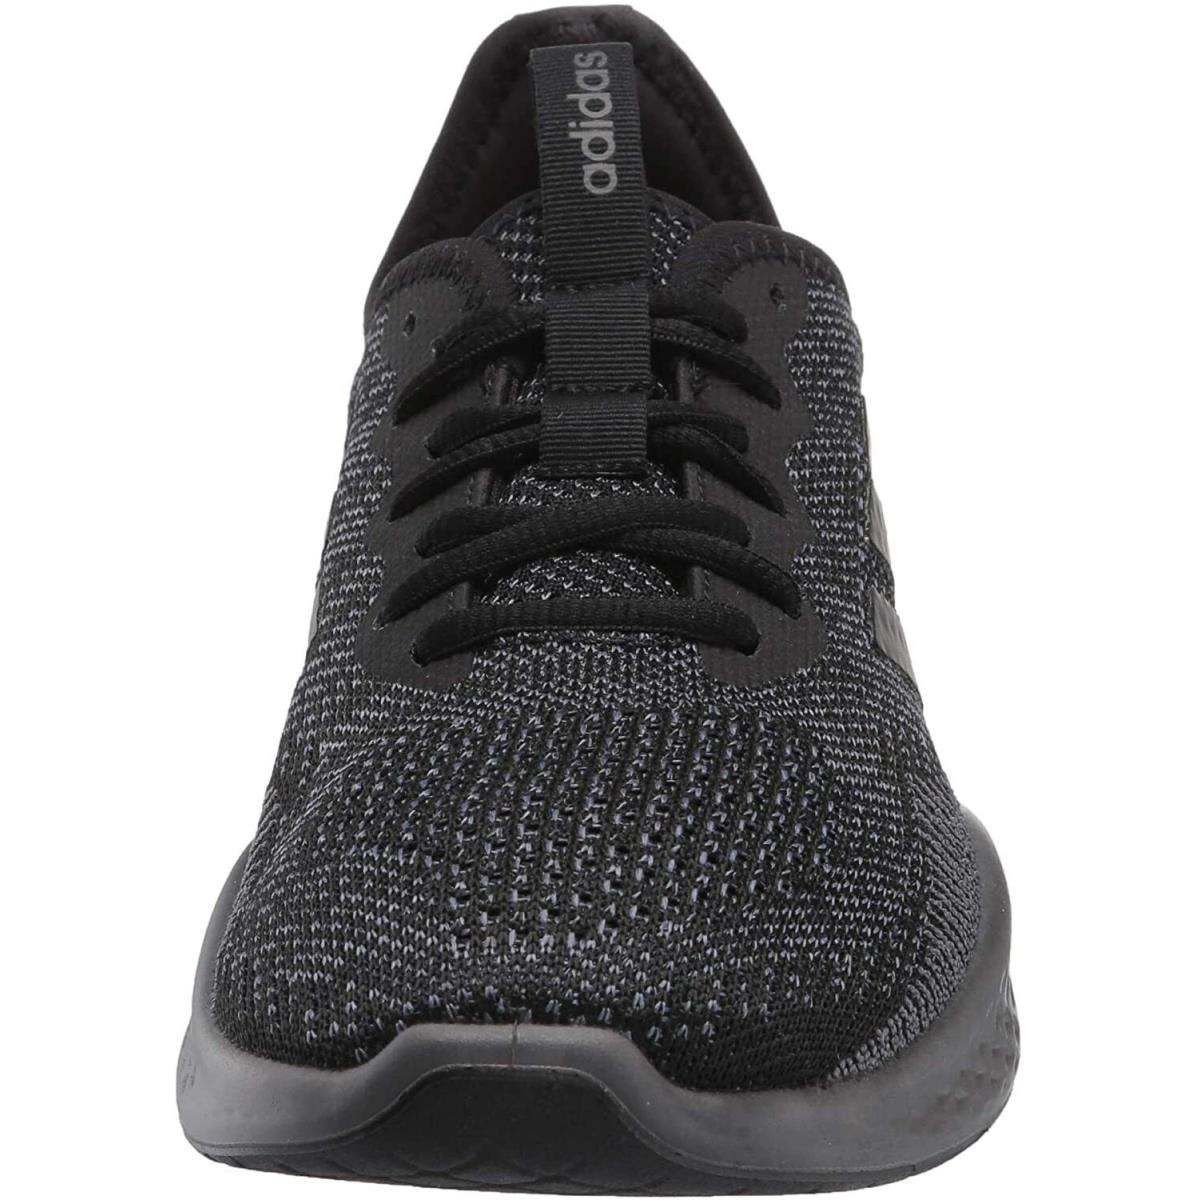 Adidas shoes FLUIDFLOW - Black 1